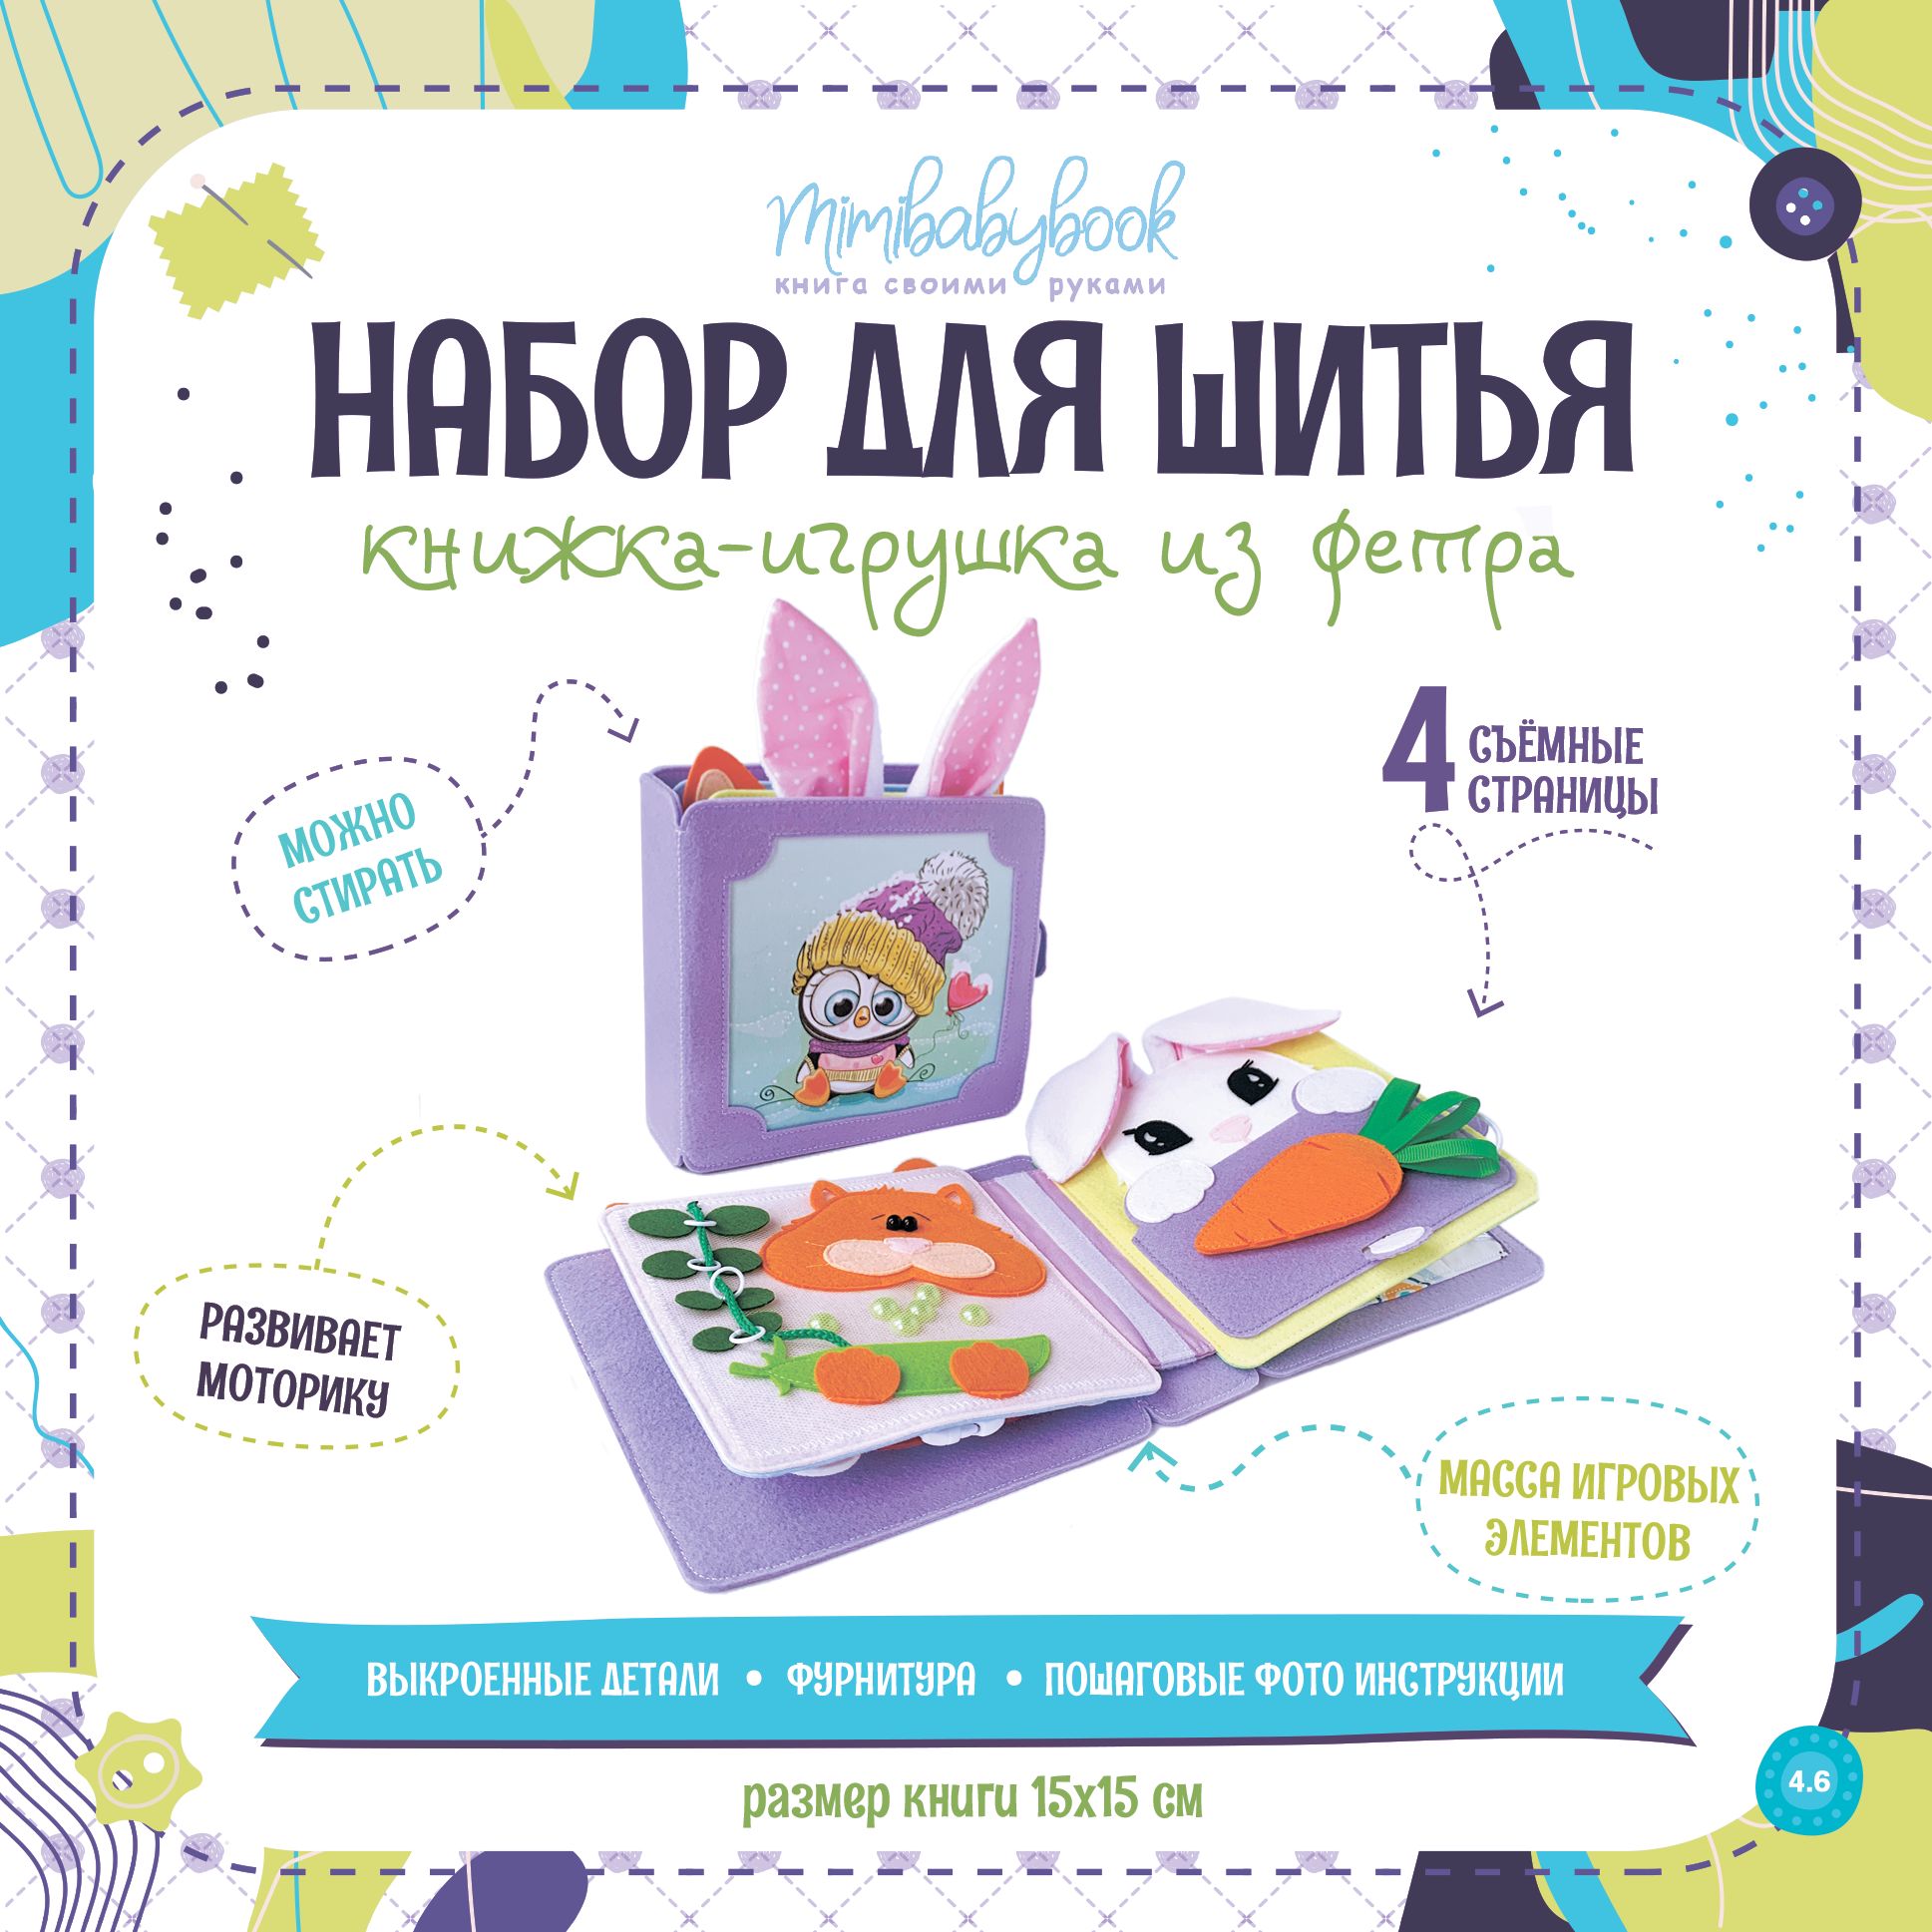 МК и выкройки для развивающих книг из фетра | ВКонтакте